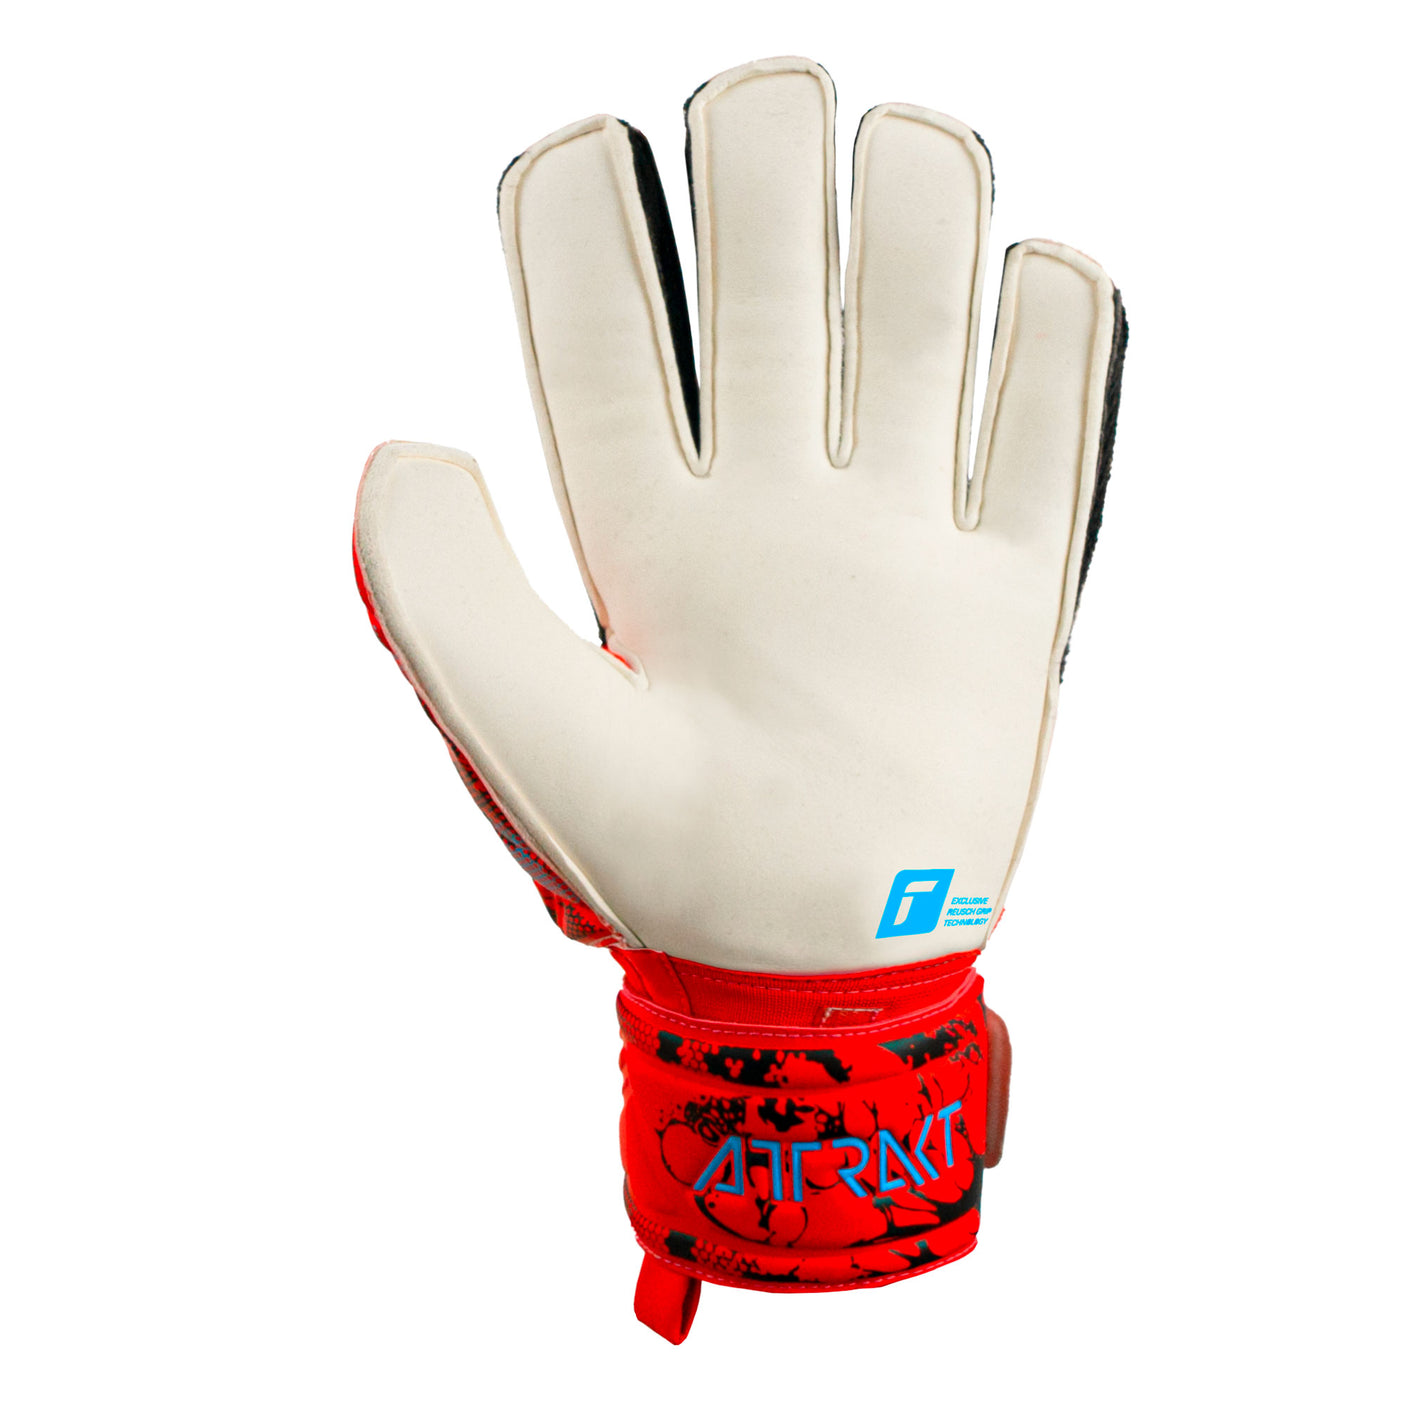 Reusch Attrakt Grip Goalkeeper Gloves Red Back